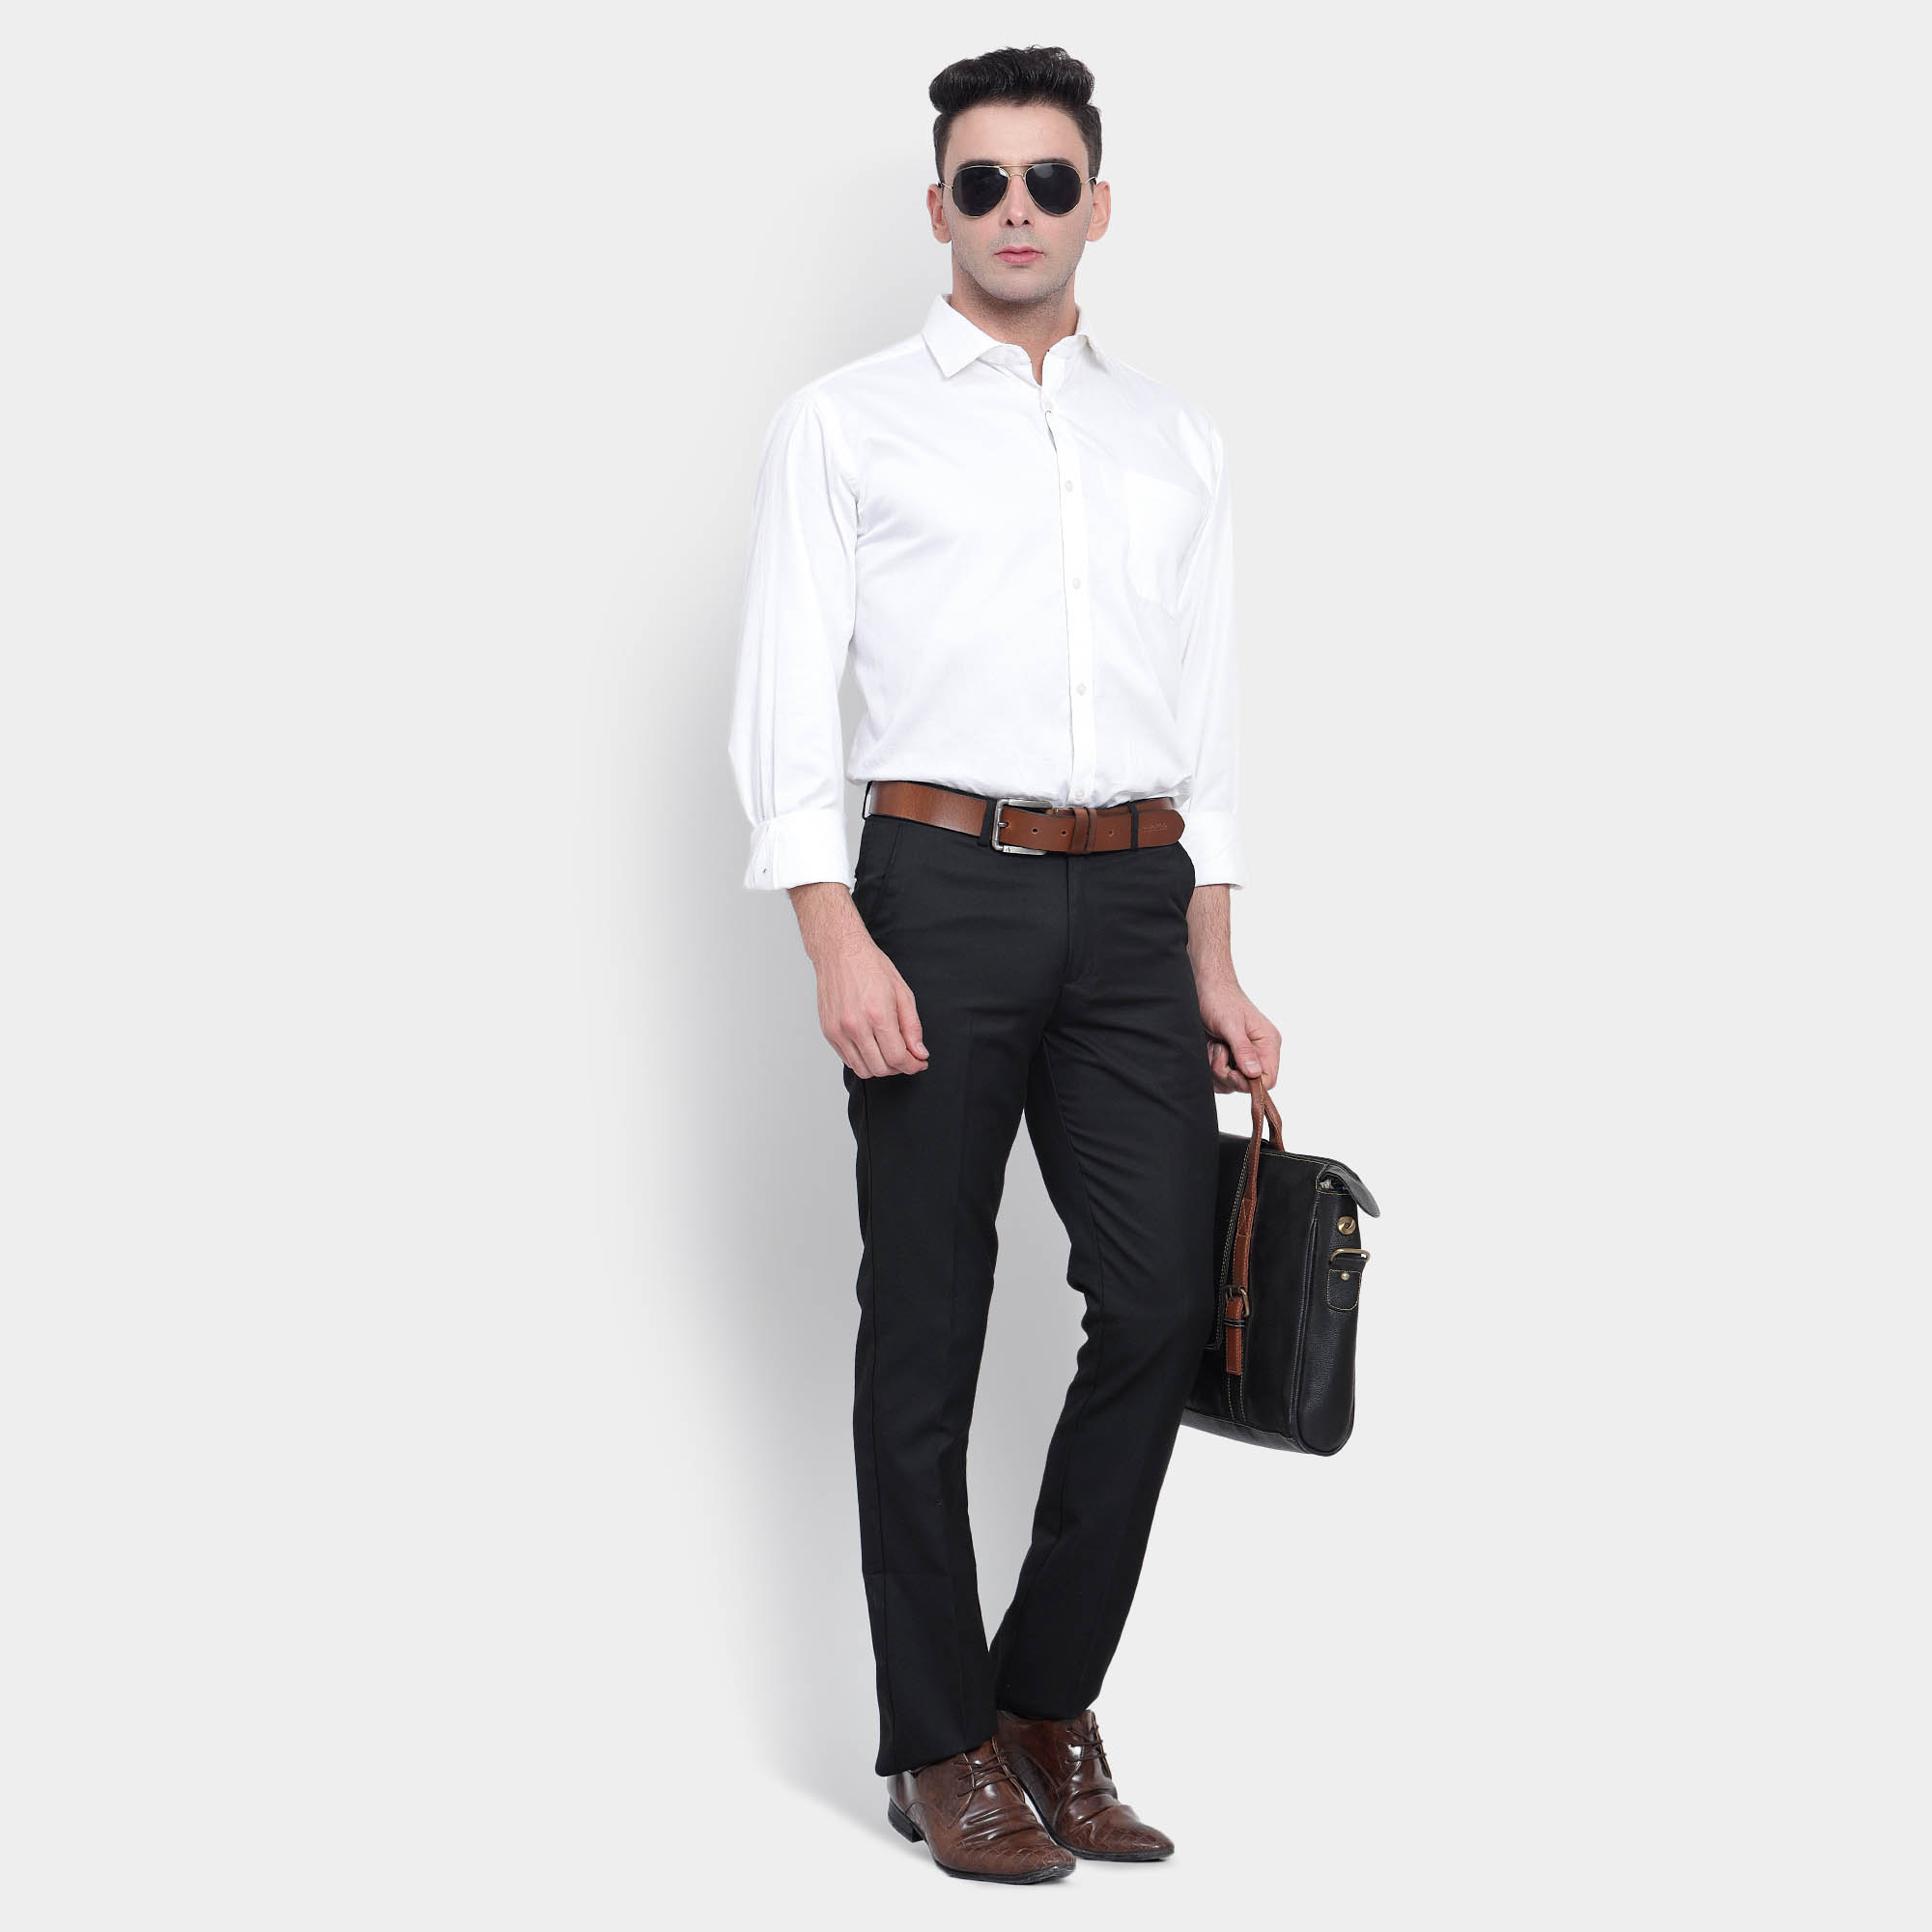 Young Man Wearing Black Shirt Brown Stock Photo 581614084 | Shutterstock